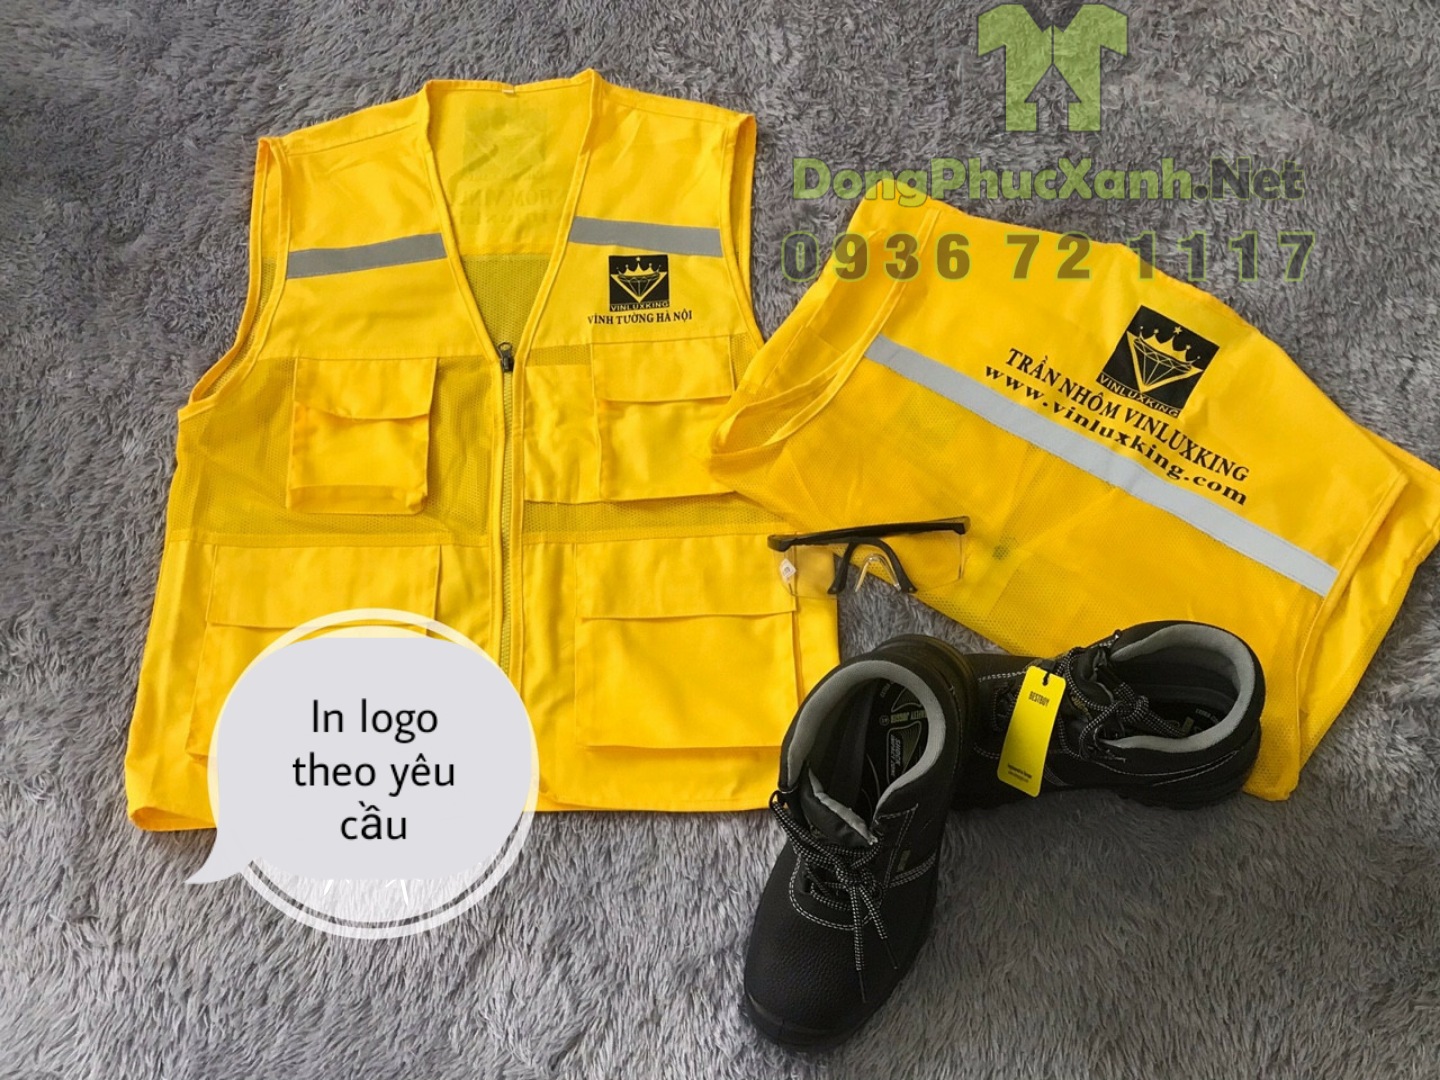 Mẫu áo ghile màu vàng 4 túi làm đồng phục in logo theo yêu cầu